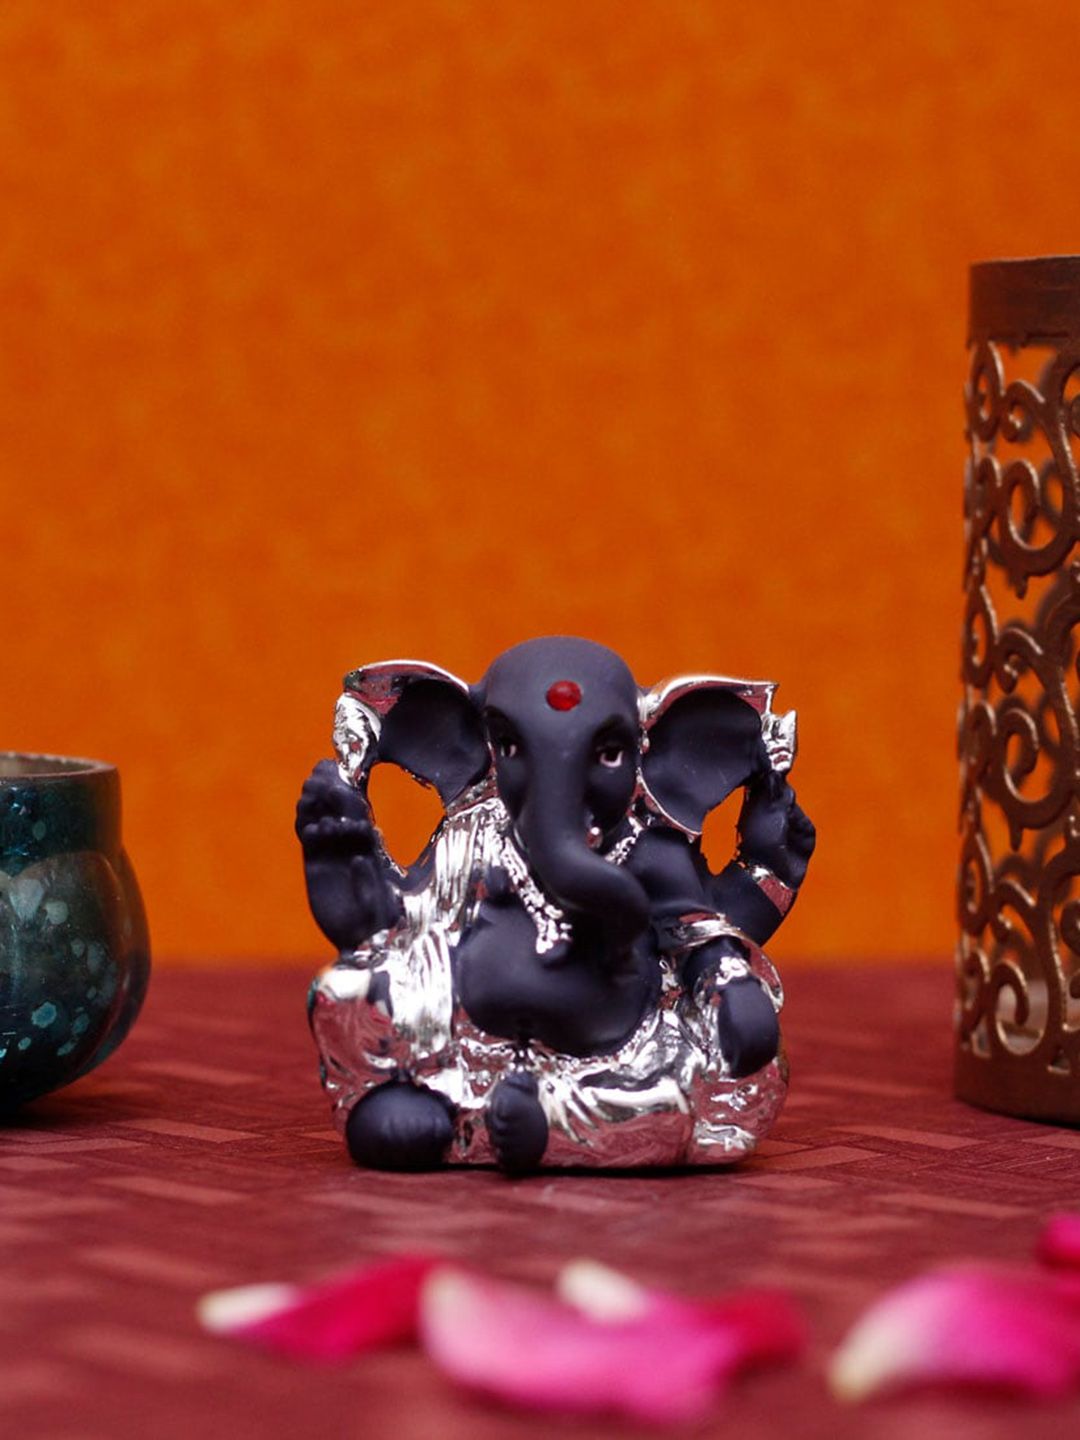 StatueStudio Silver-Toned & Black Ganpati Statue Ganesha Showpieces Price in India